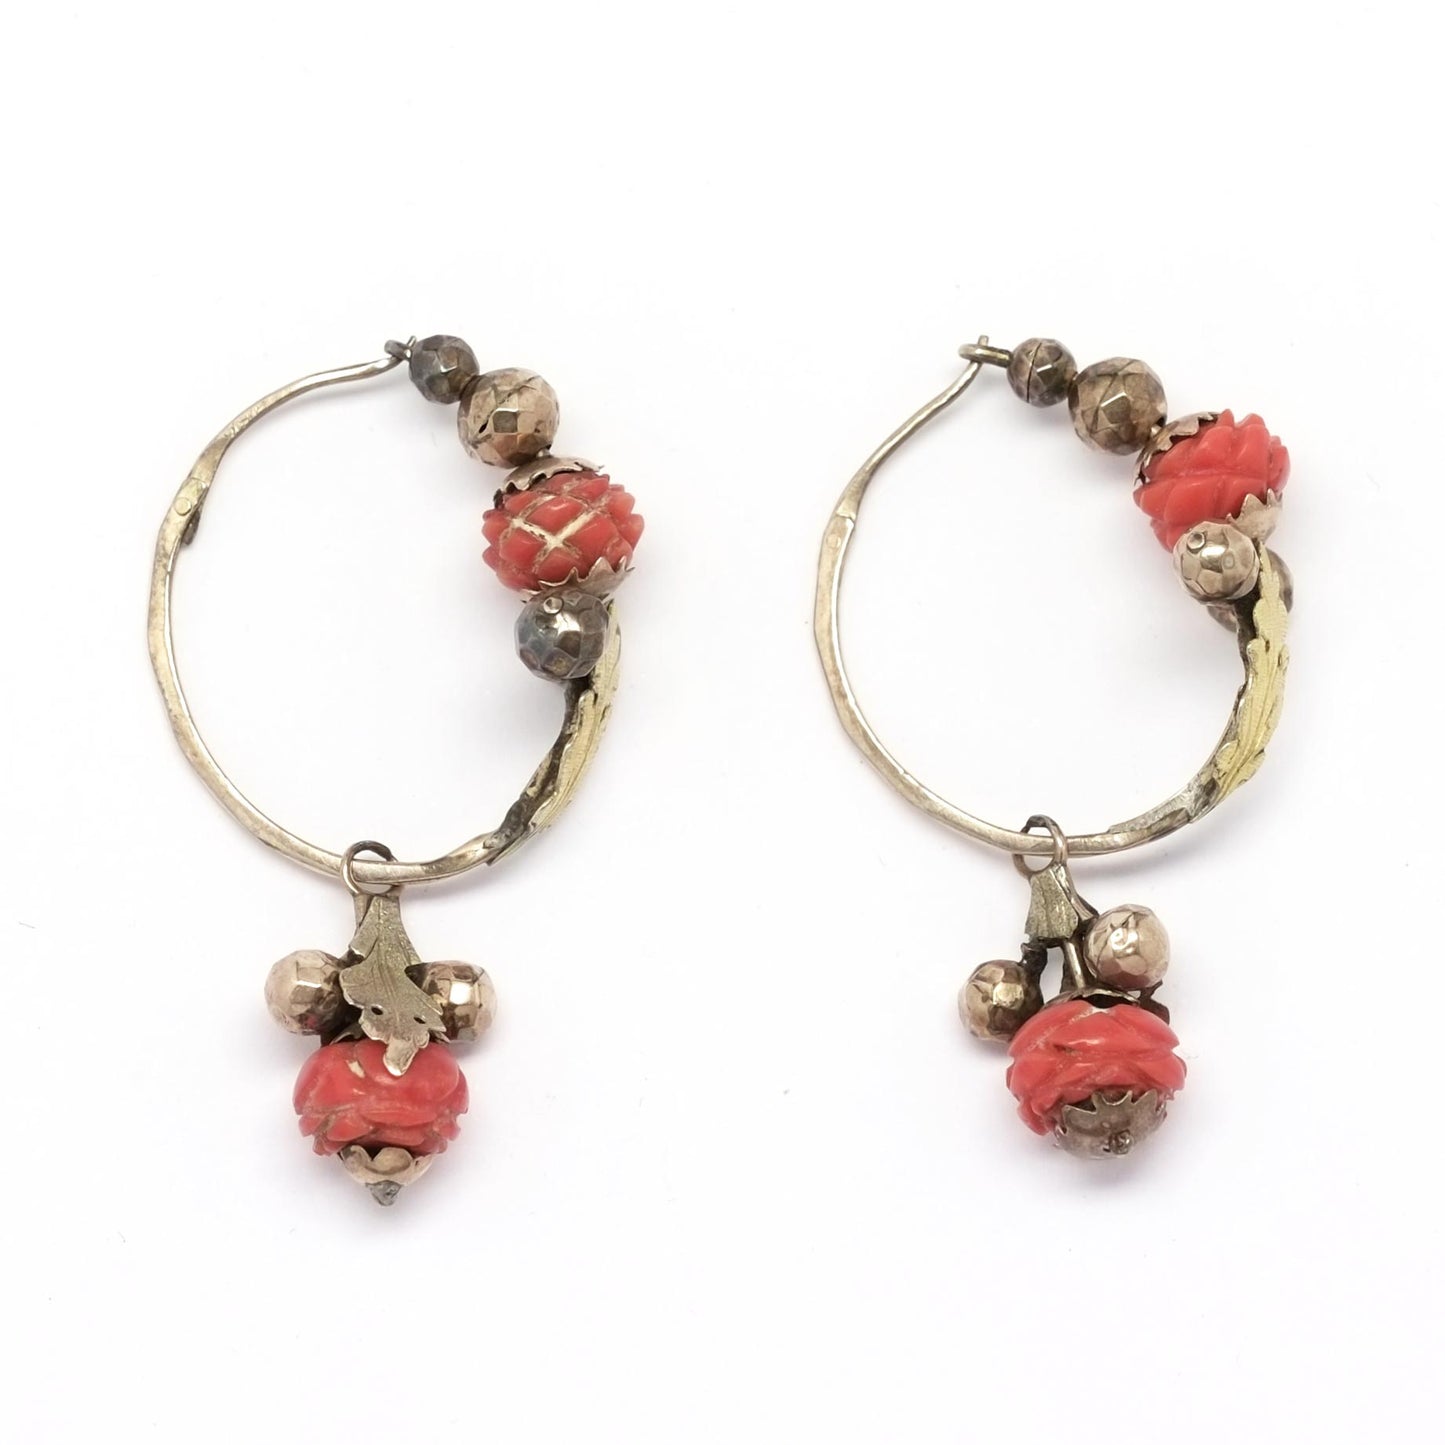 Antique Italian Hoop Earrings Coral Rose buds